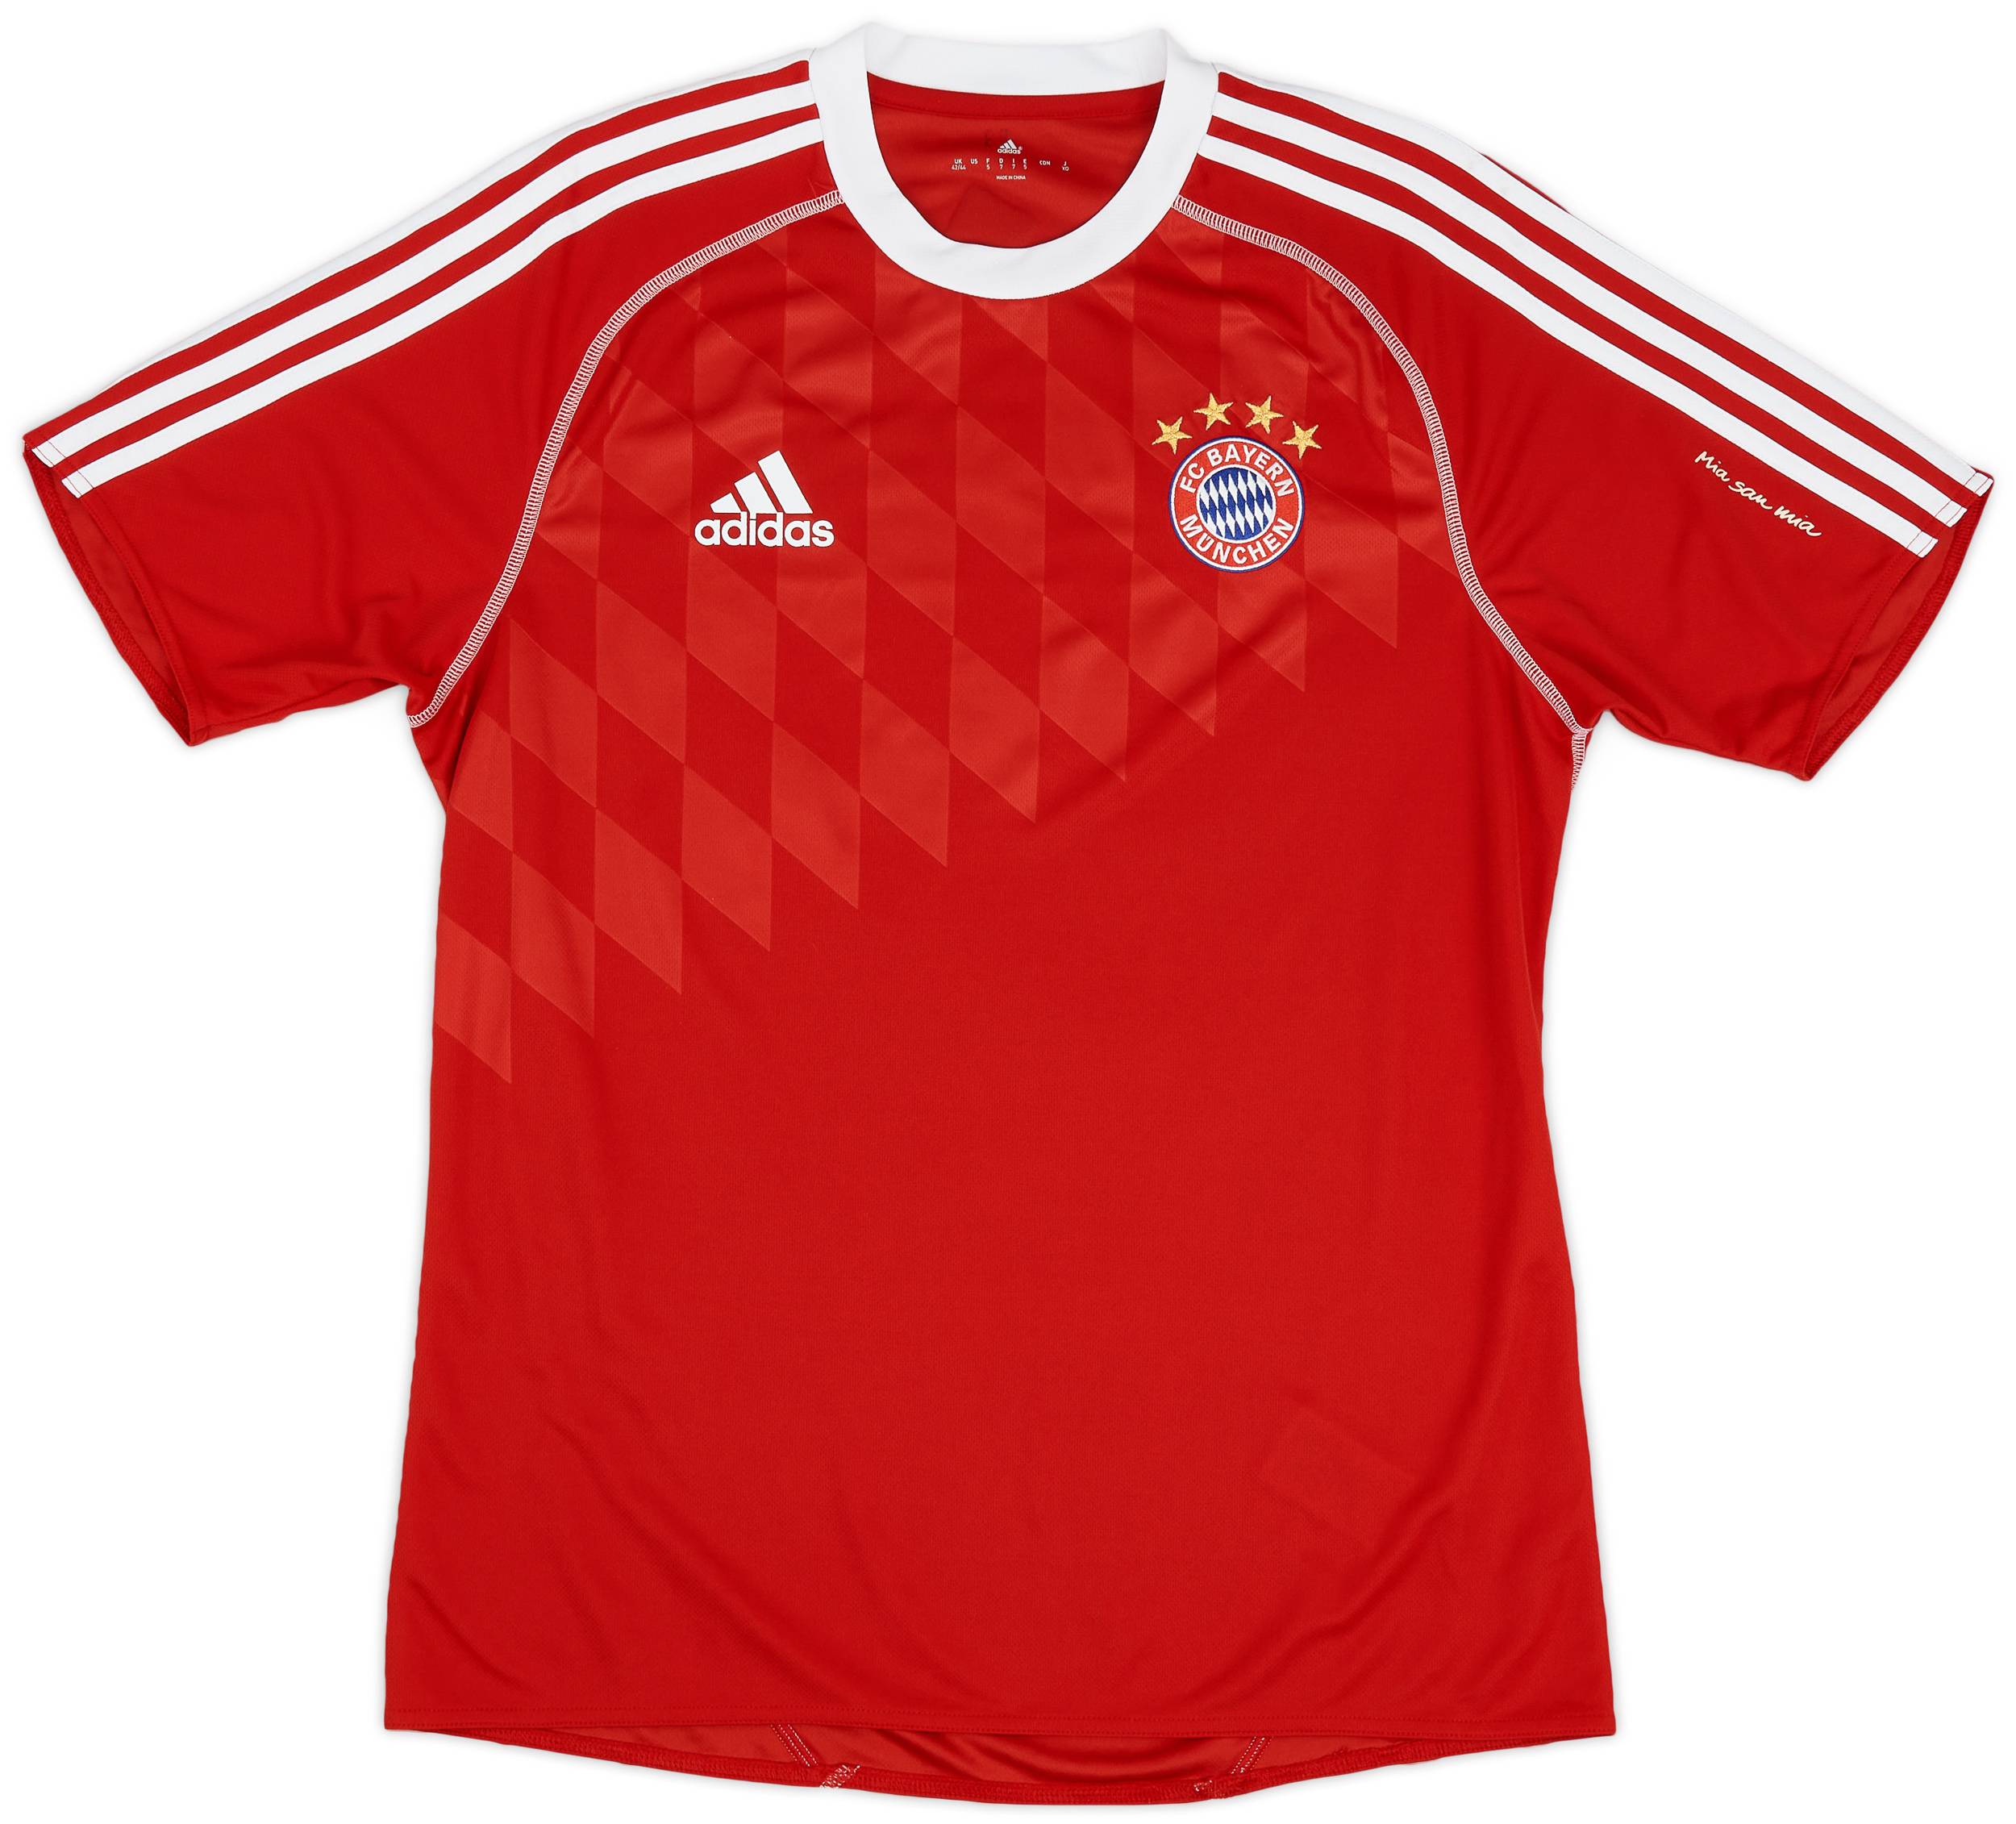 2013-14 Bayern Munich adidas Training Shirt - 9/10 - (L)